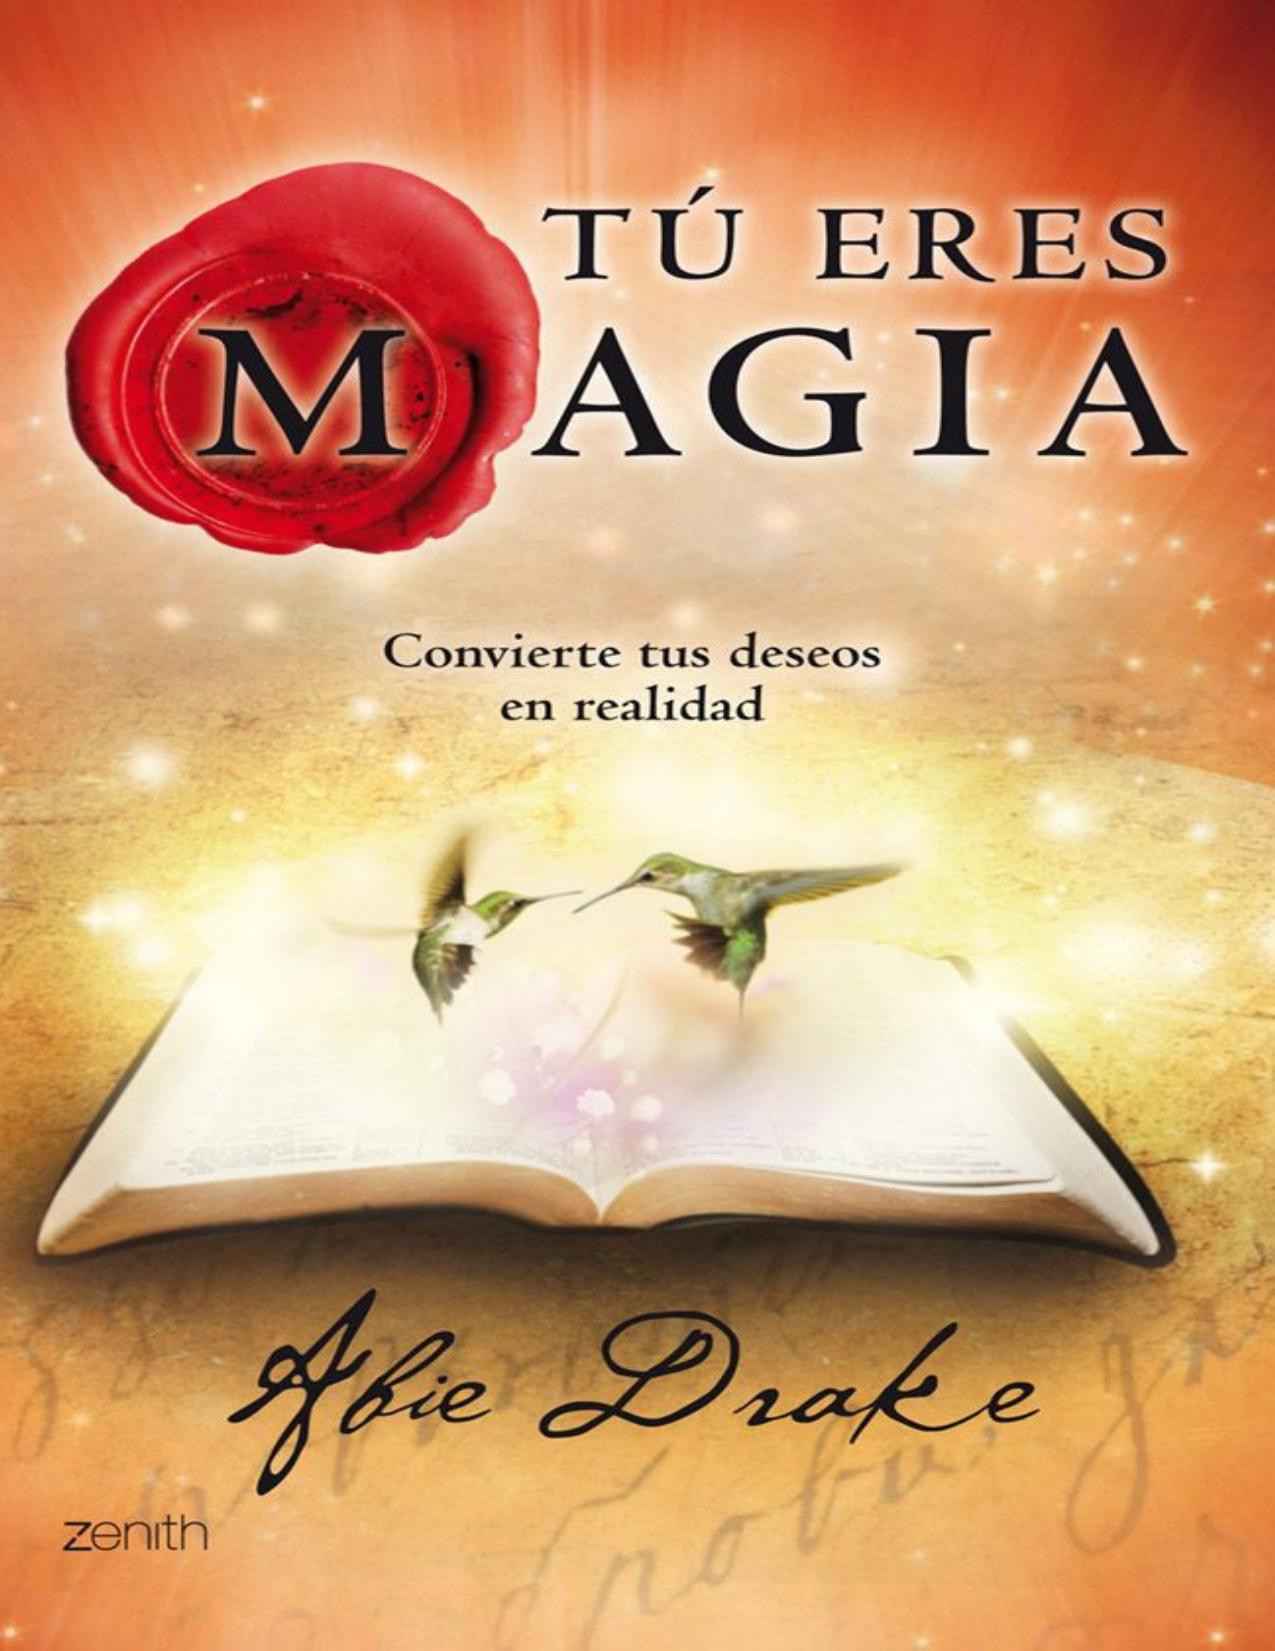 Tú eres magia: Convierte tus deseos en realidad (Spanish Edition)